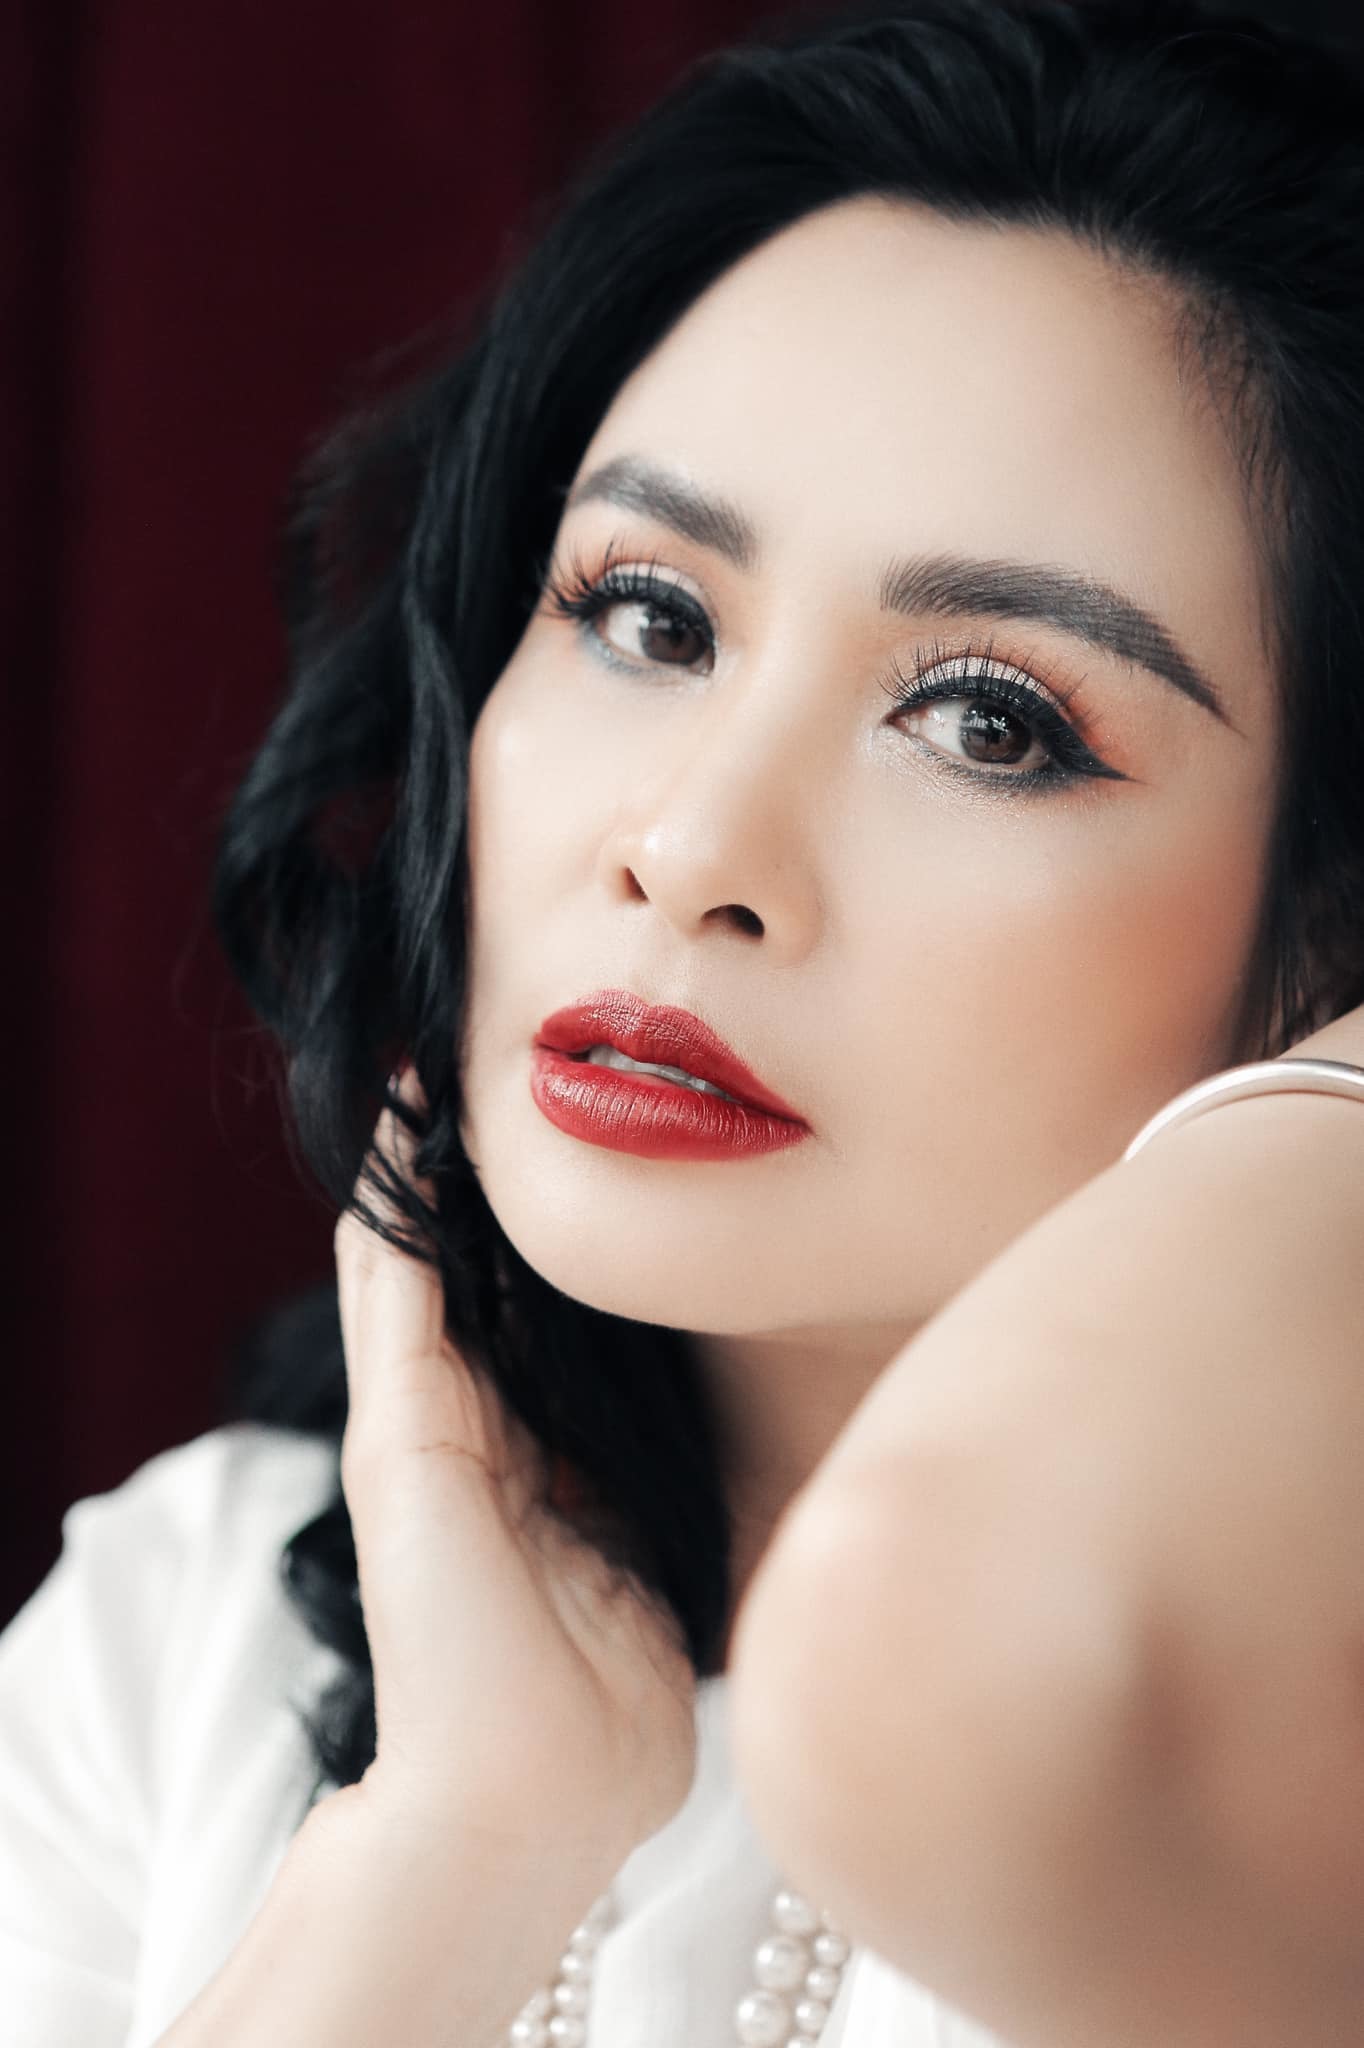 Diva Thanh Lam tuổi 52 ngày càng quyến rũ